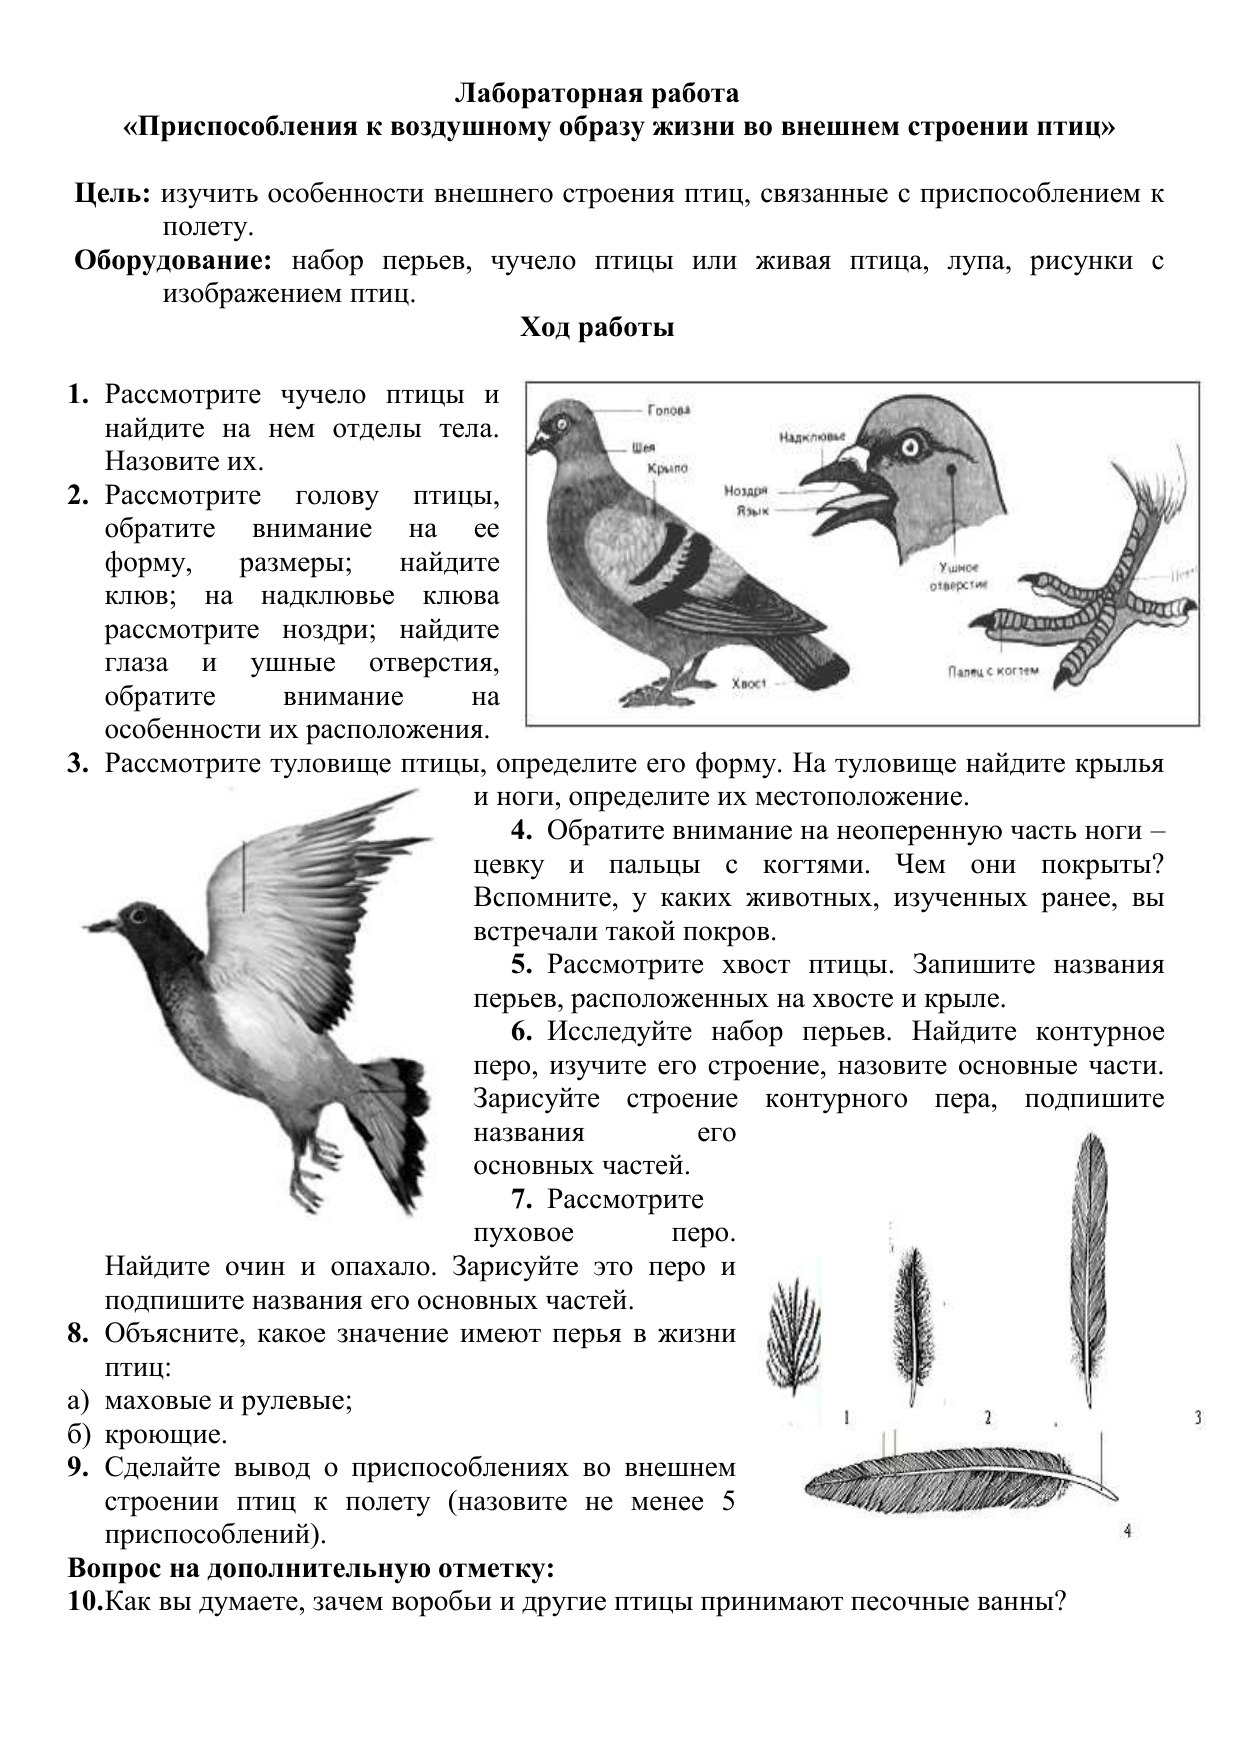 Практическая работа изучение внешнего строения птиц